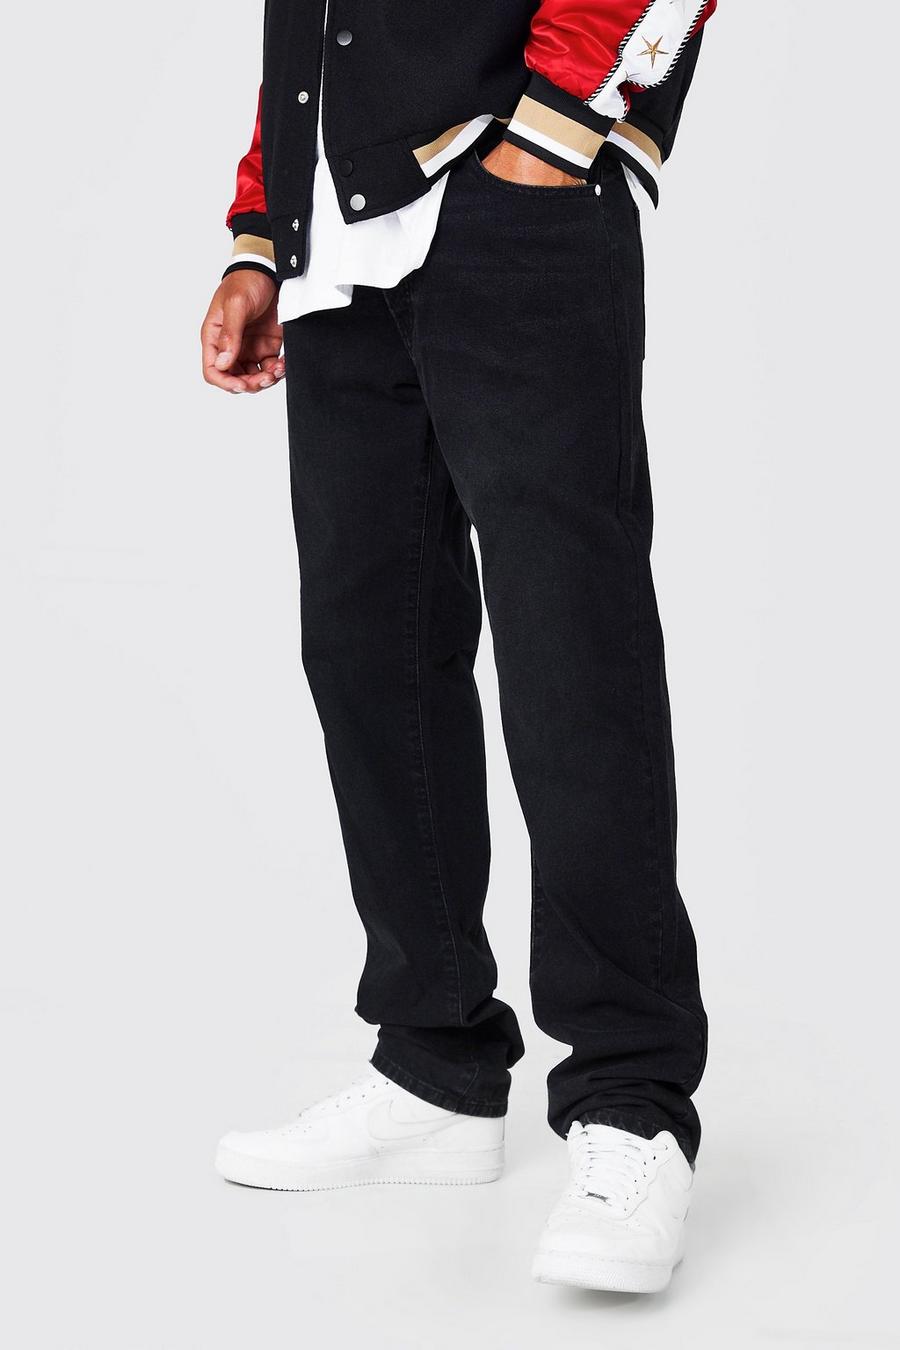 שחור דהוי ג'ינס עם כותנה ממוחזרת בגזרה ישרה, לגברים גבוהים image number 1